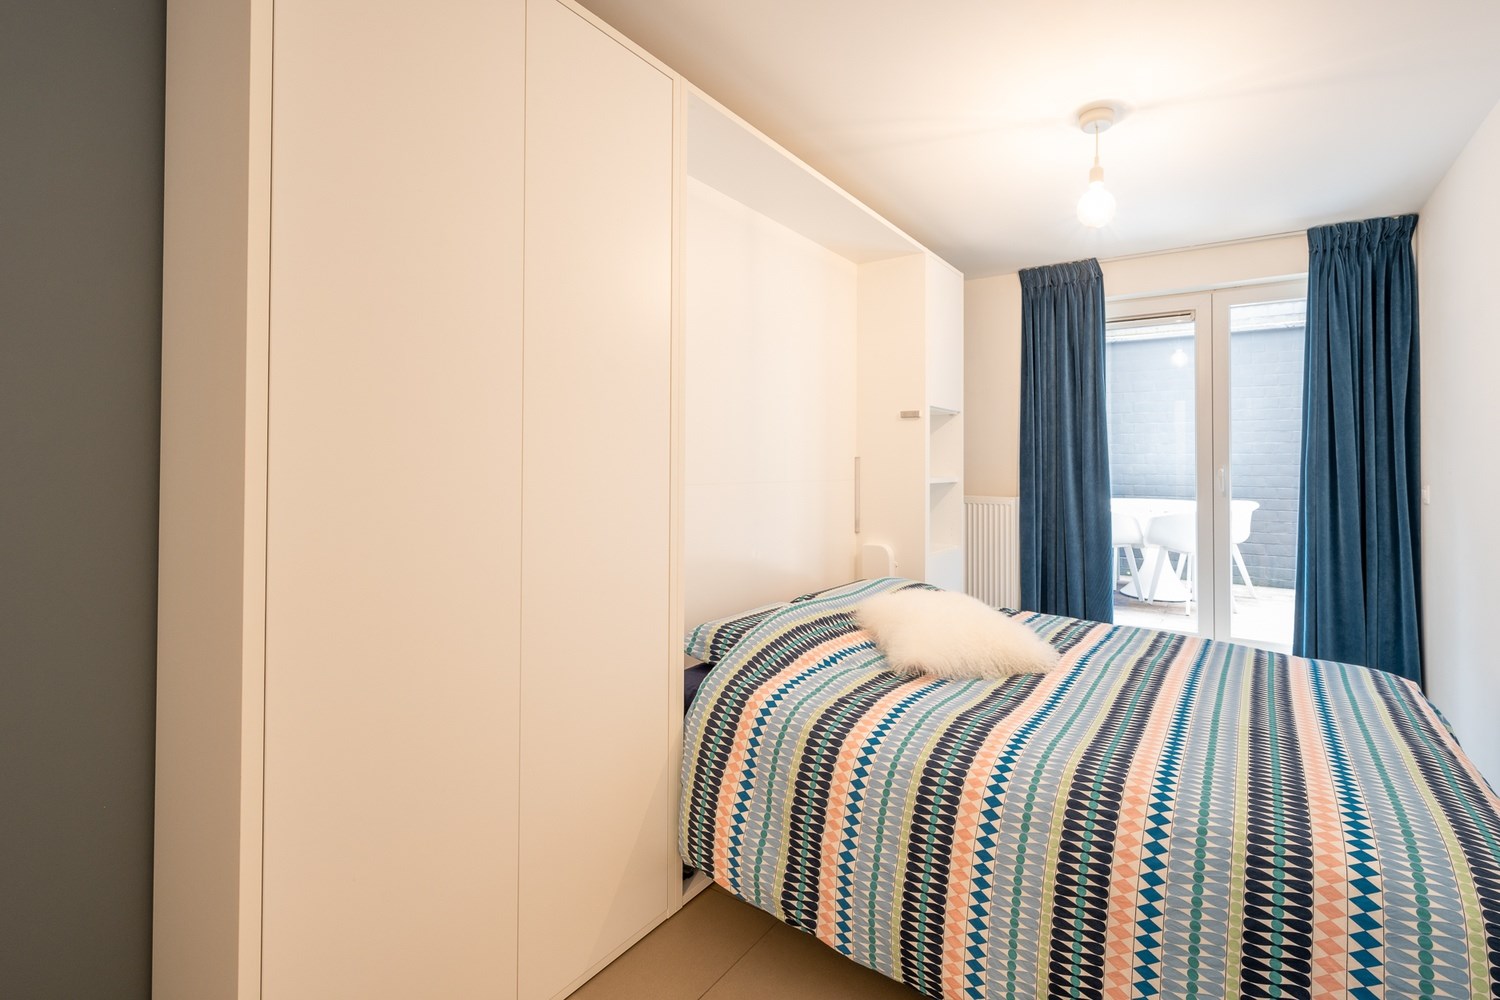 Aangenaam opgefrist gelijkvloersappartement met 2 slaapkamers en zongerichte koer gelegen in een recent gebouw te Knokke. 